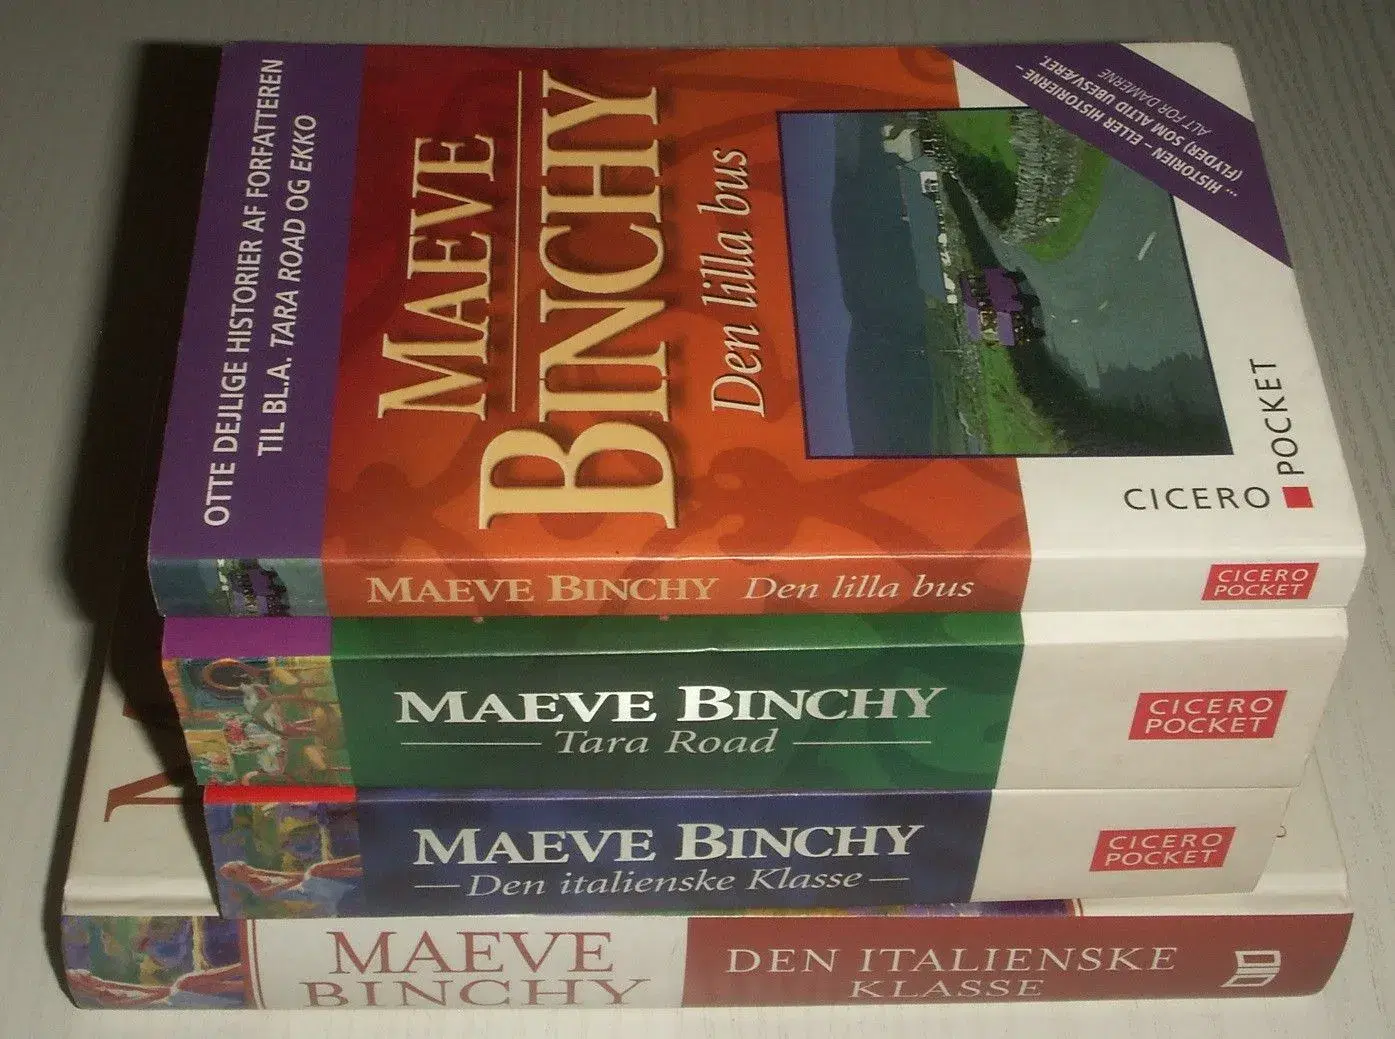 Div bøger af Maeve Binchy